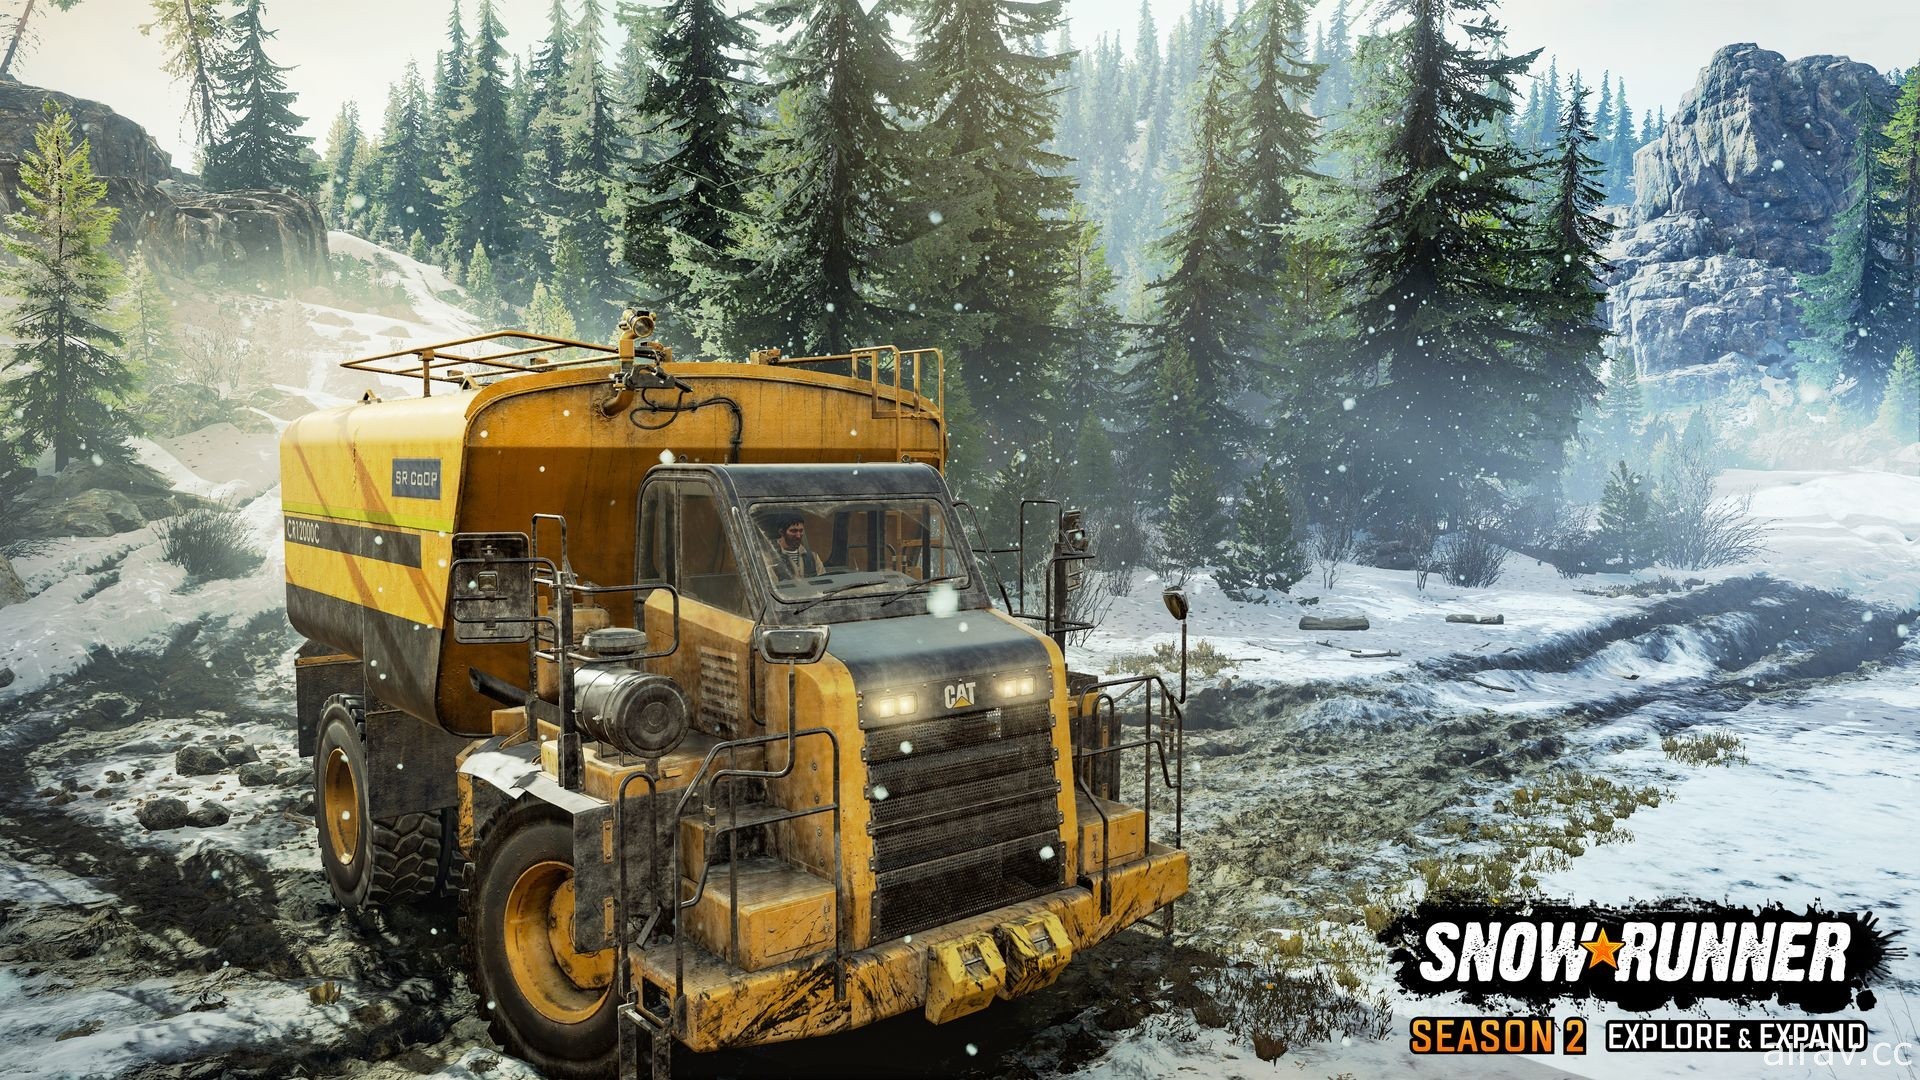 《雪地奔驰》第二季“探索及扩展”将于 11 月 16 日正式推出